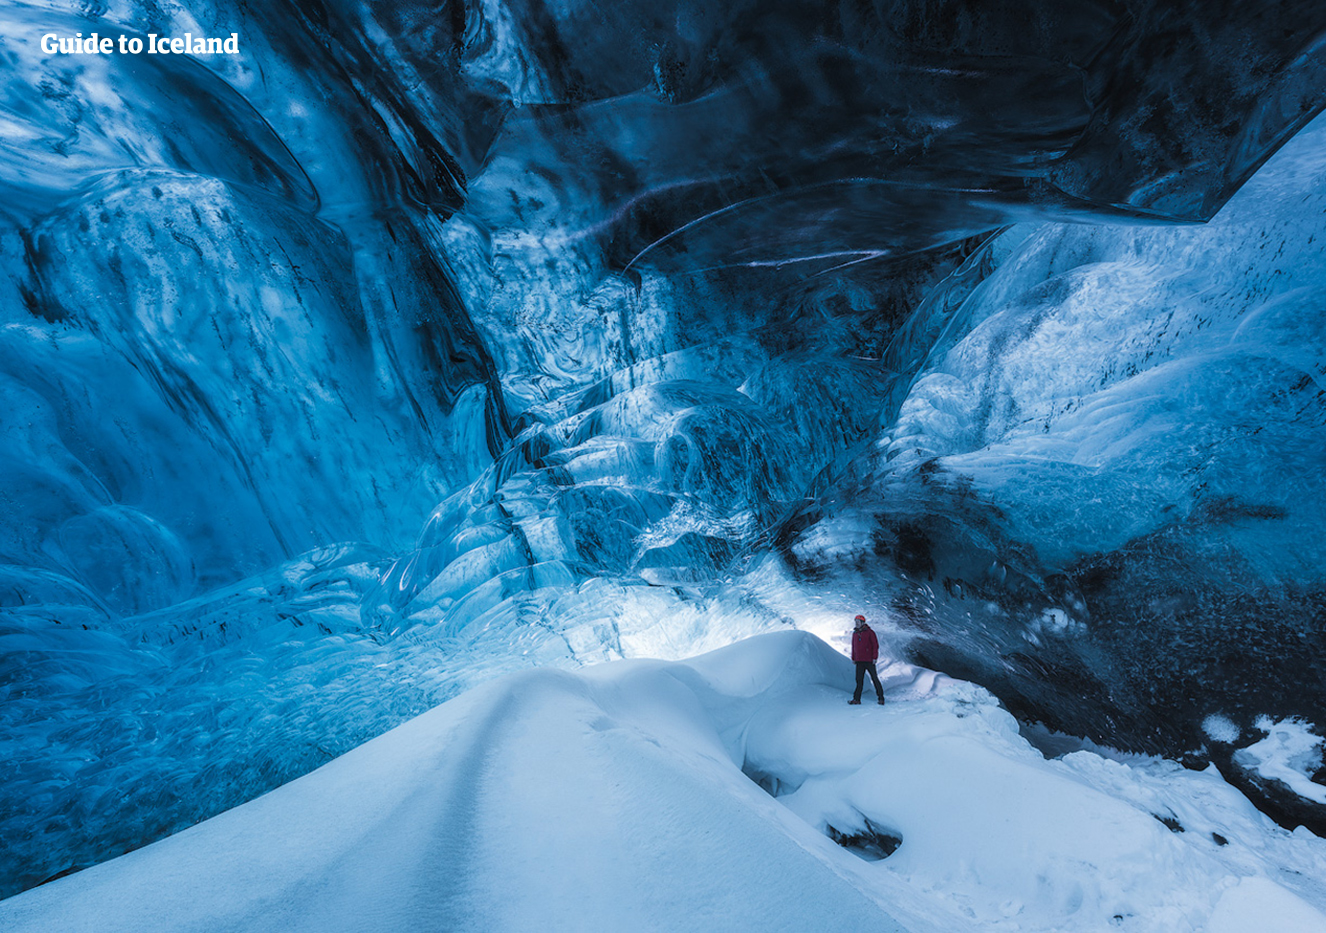 Błękitne jaskinie lodowe tworzące się w lodowcu Vatnajokull są absolutnie spektakularne.